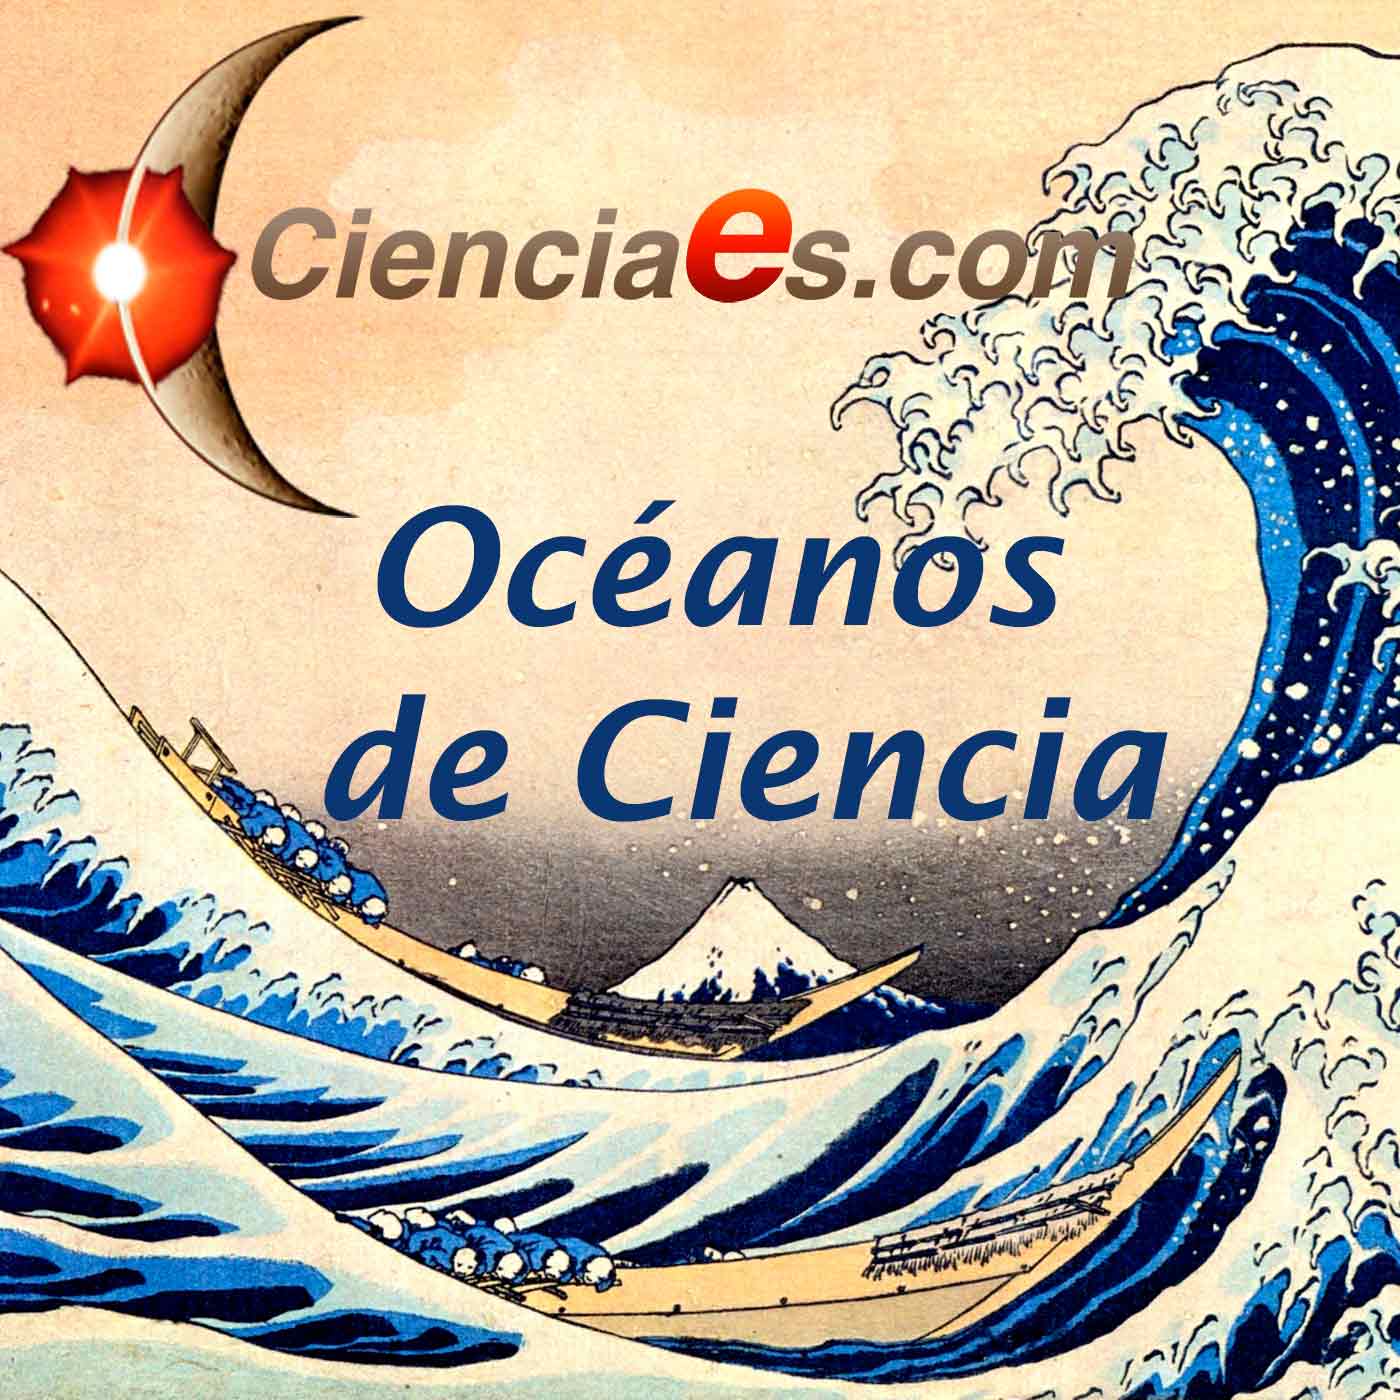 Océanos de Ciencia - Cienciaes.com Podcast artwork